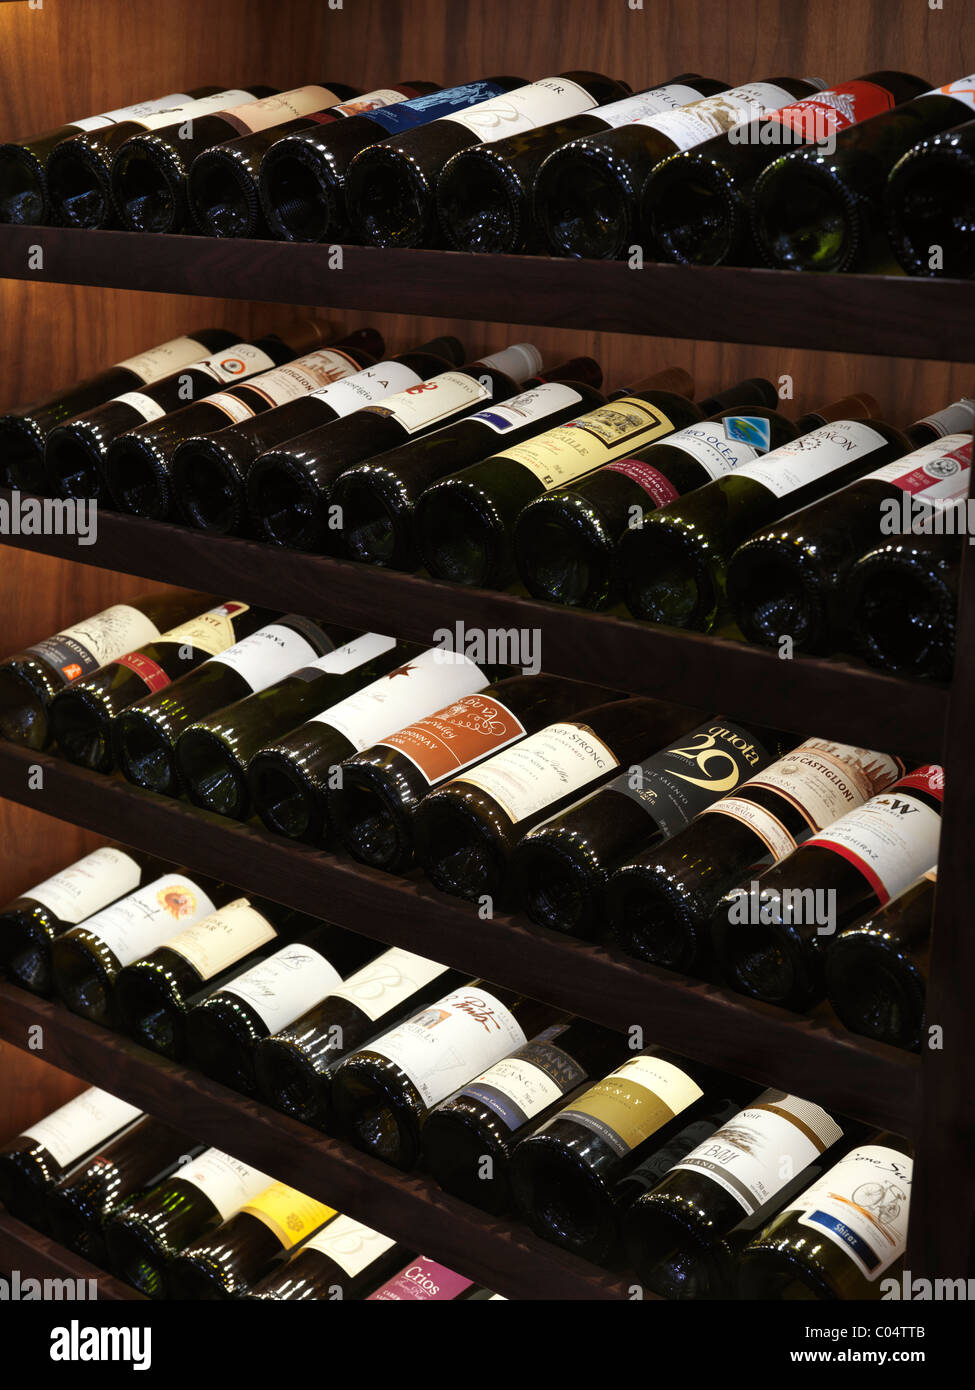 Wine bottles on wine rack shelves Stock Photo